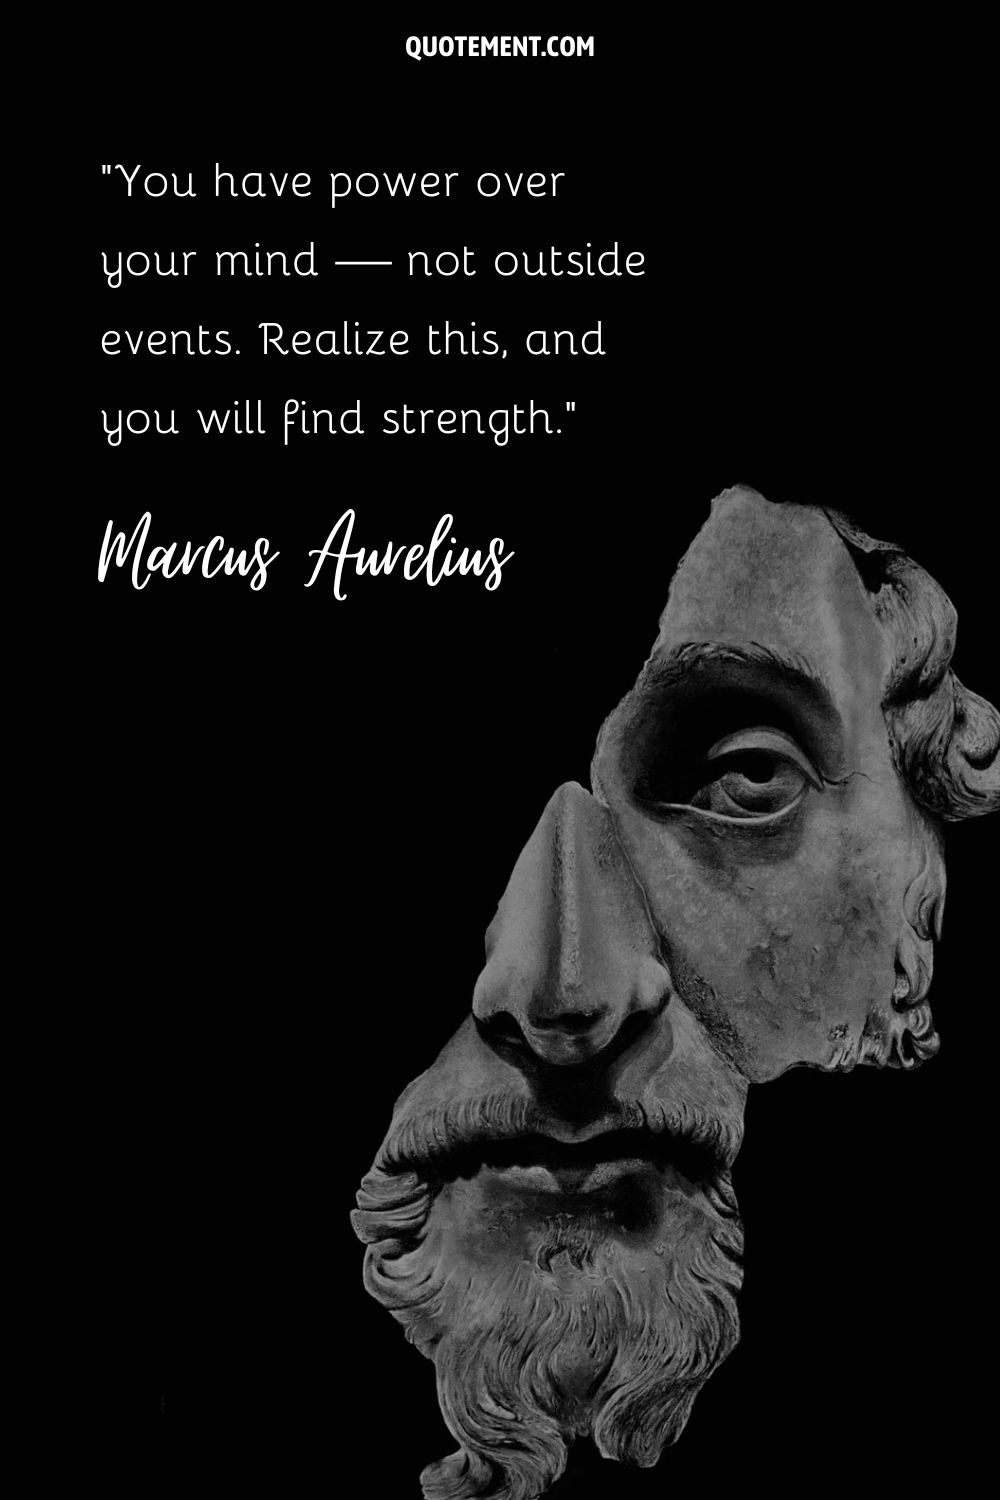 Marcus Aurelius sculpture representing the best Marcus Aurelius quote.
